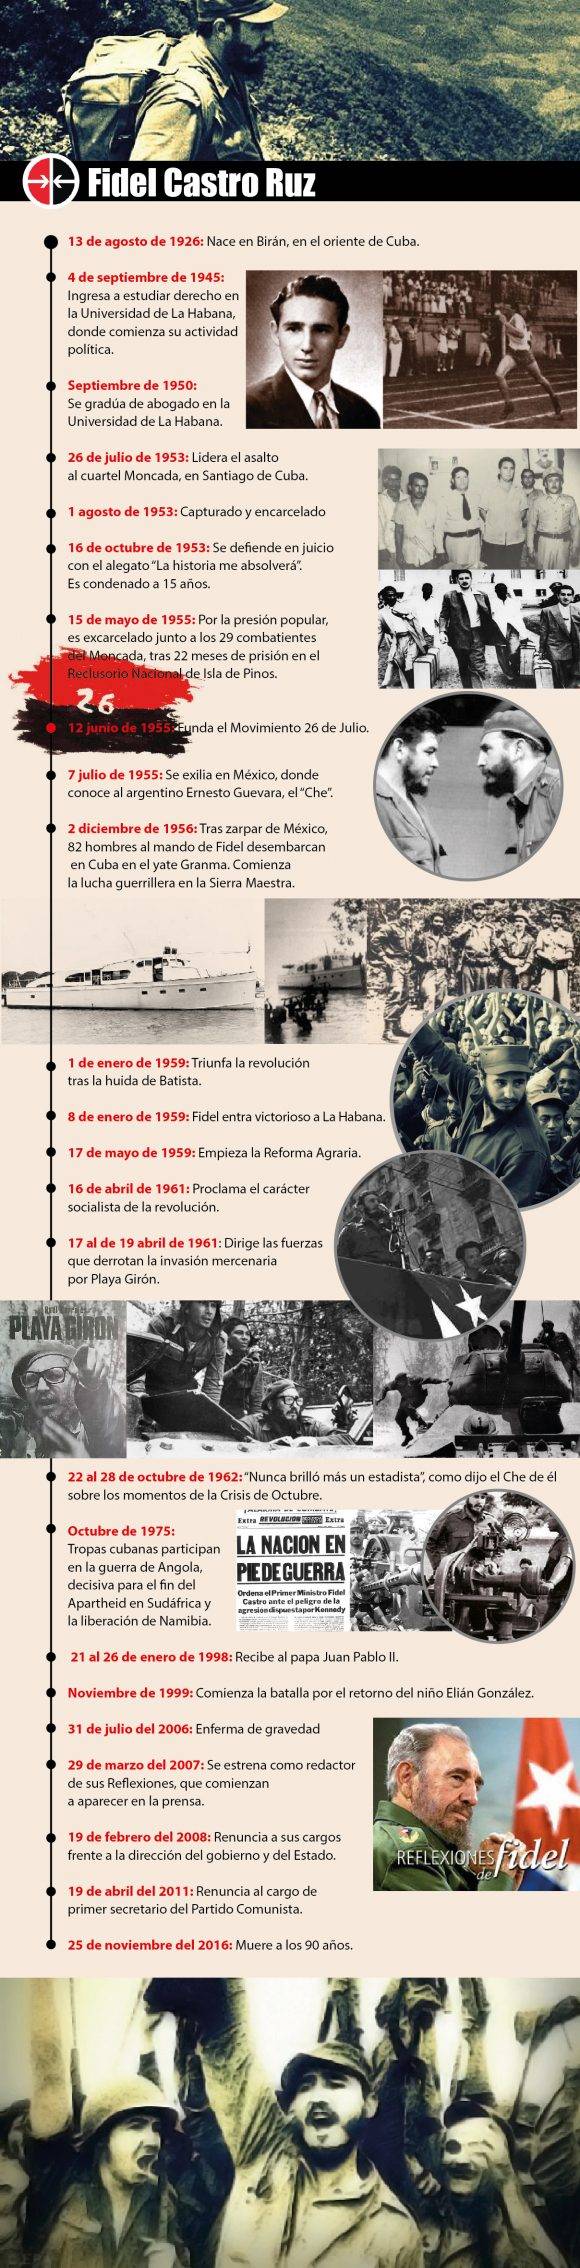 Breve cronología de la vida del líder de la Revolución Cubana, Fidel Castro. Infografía: Luis Amigo/ Cubadebate.